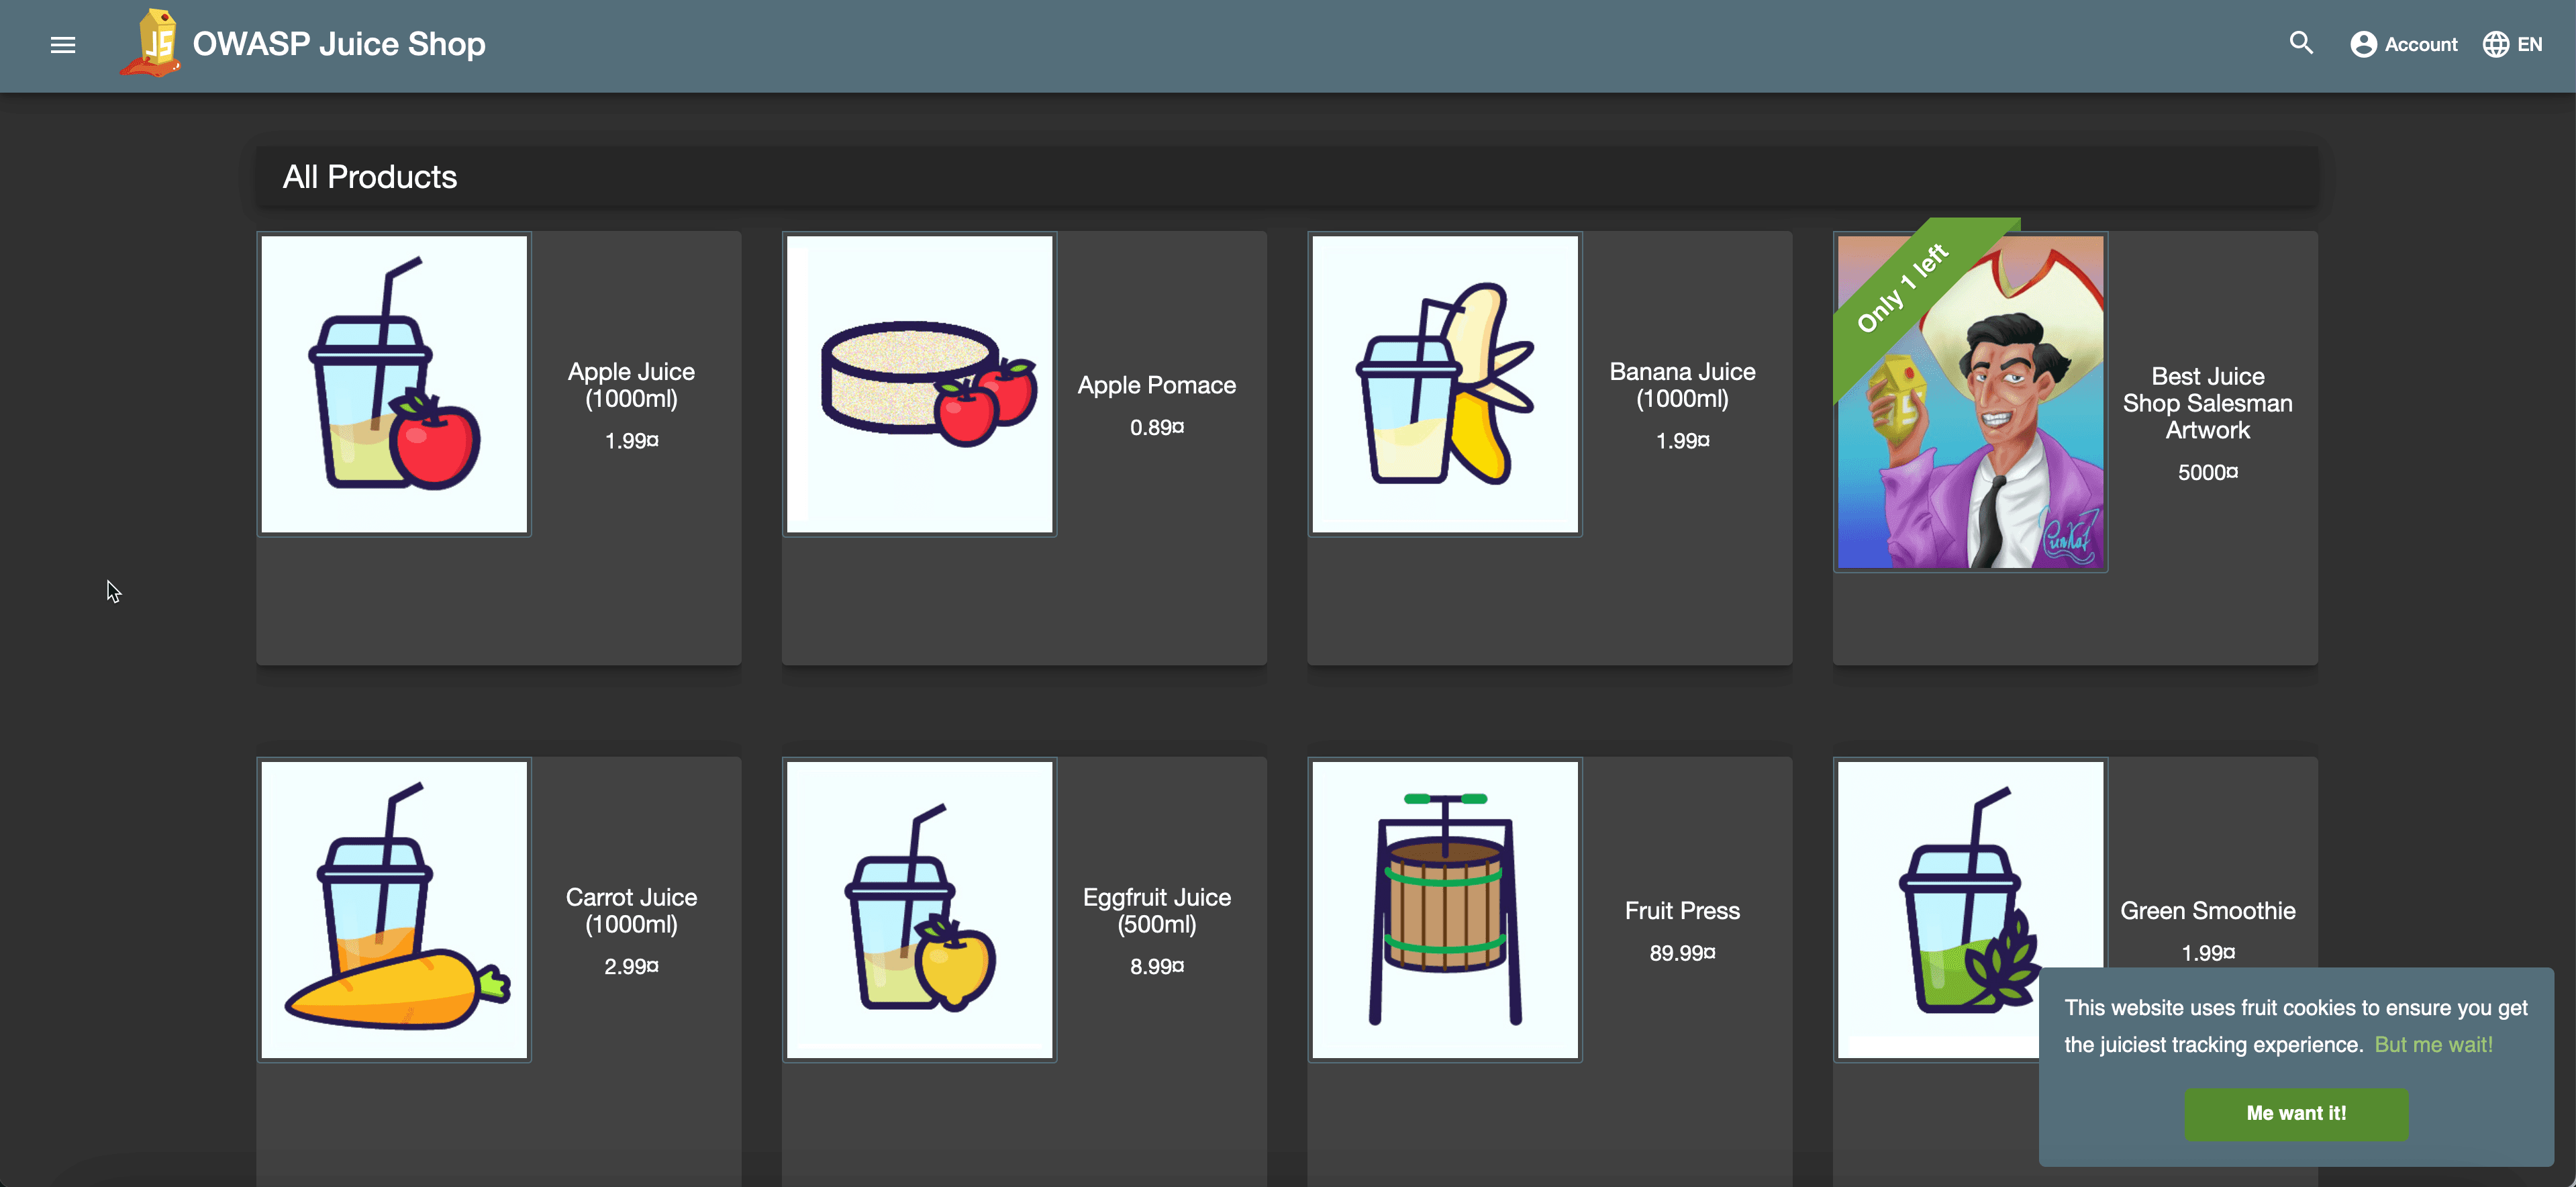 A Screenshot of the OWASP Juice Shop UI